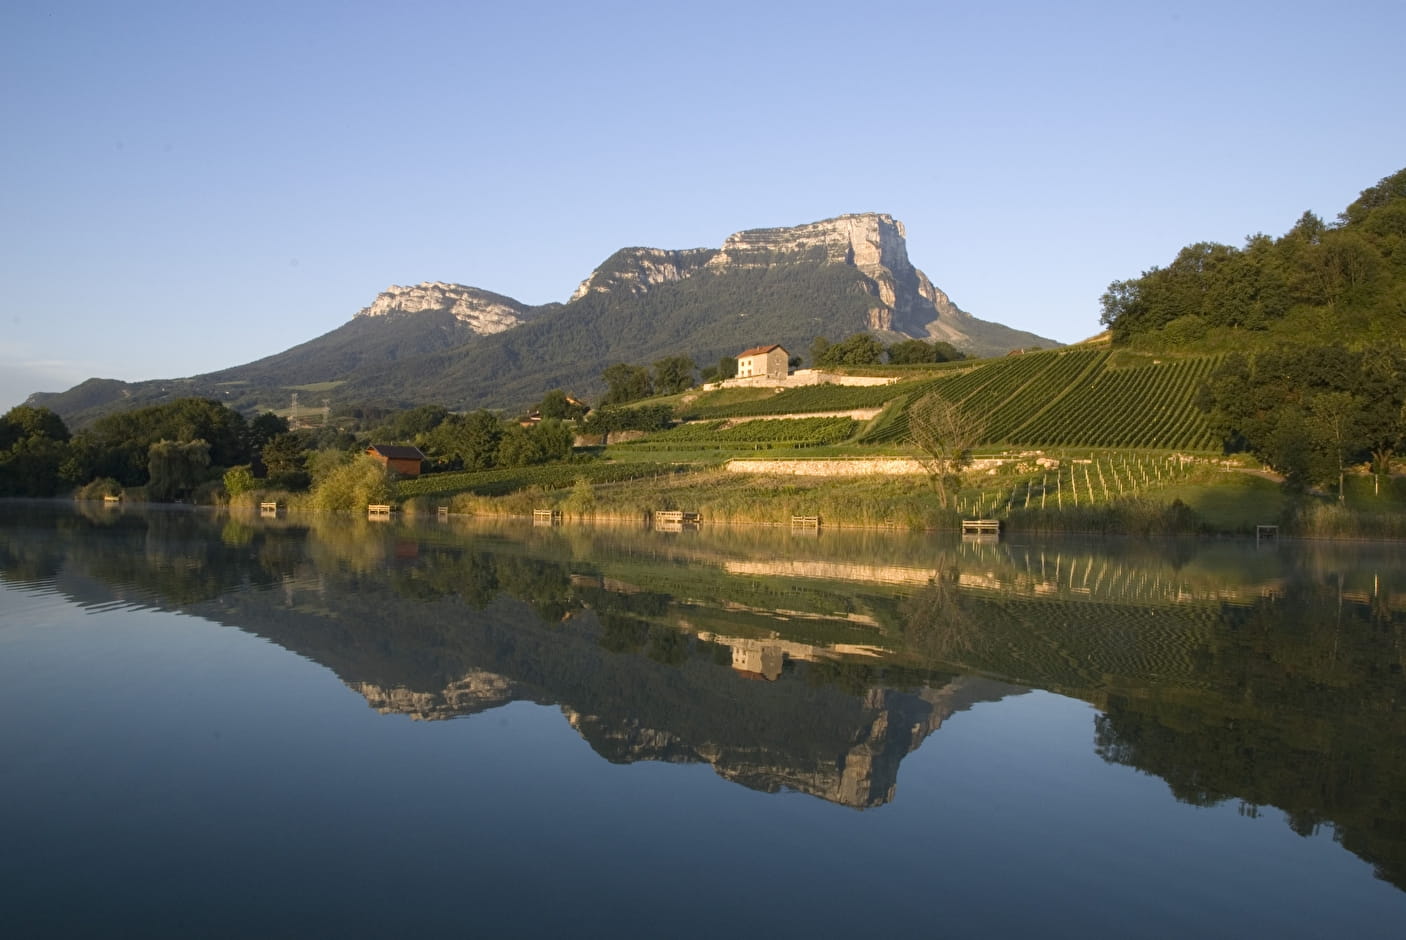 Philippe & Sylvain Ravier - Achat de vins de Savoie - Mondeuse